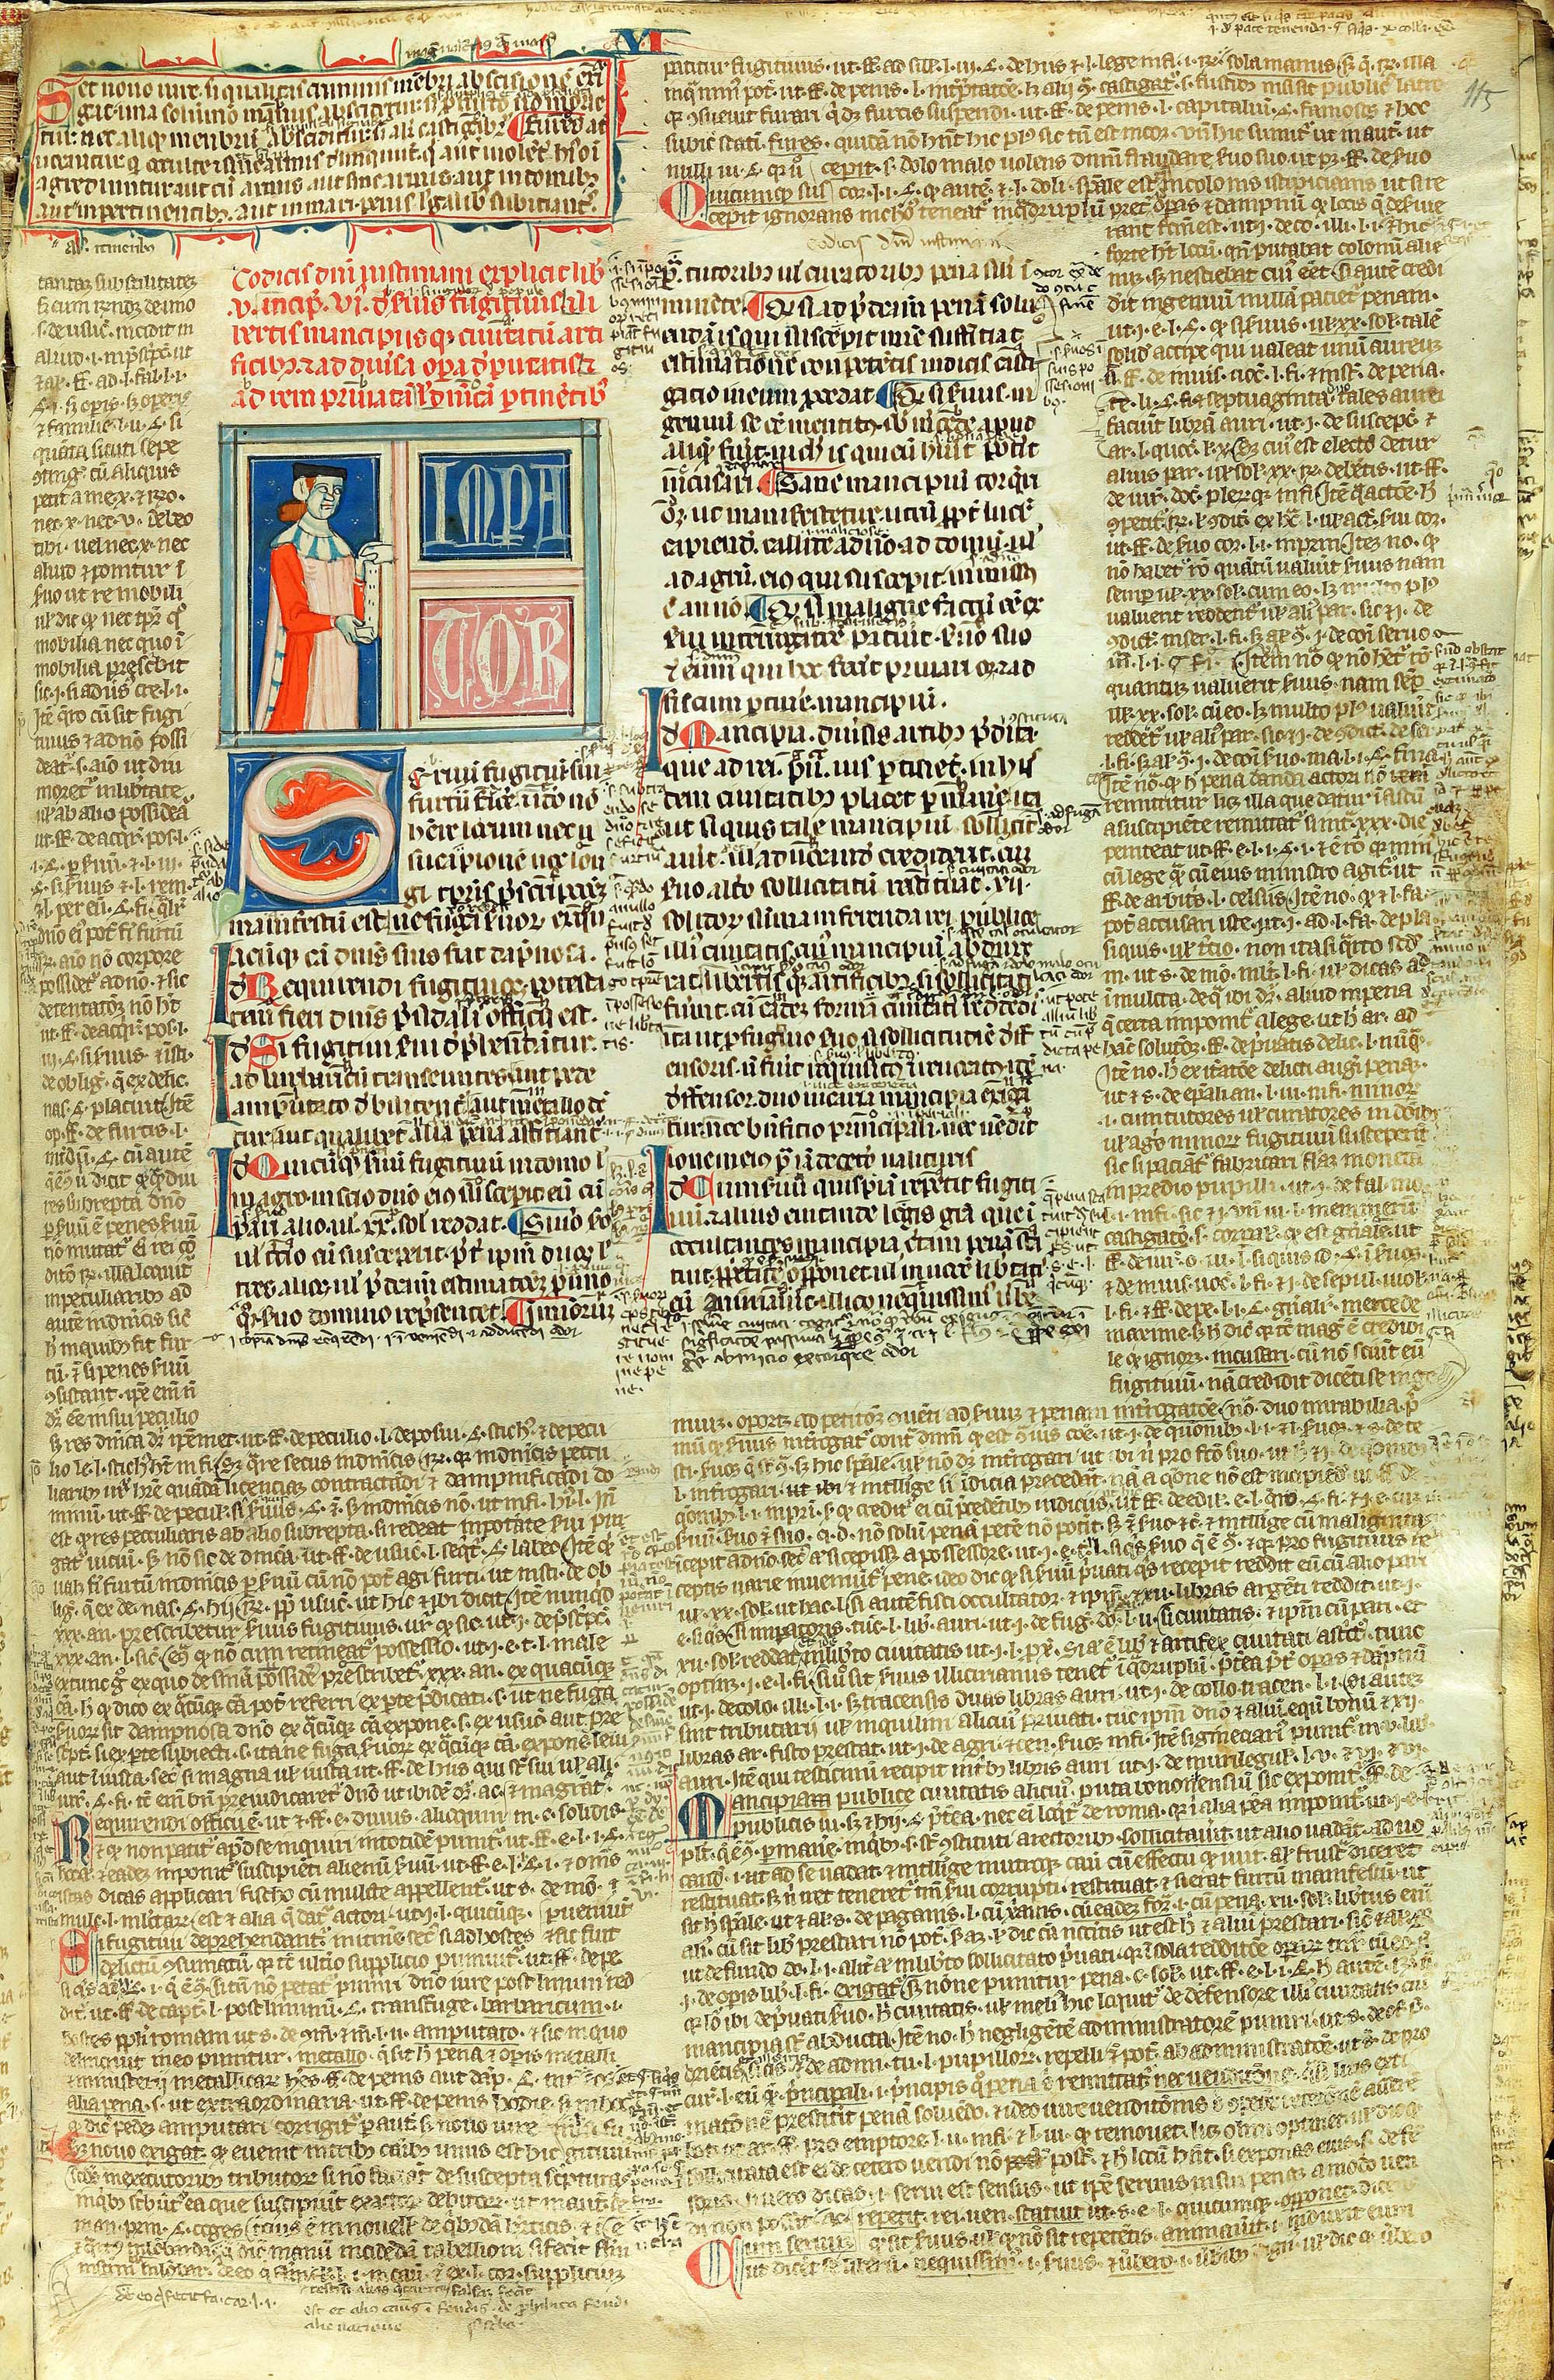 Manuscrit amb notes marginals de Francesco Accursio